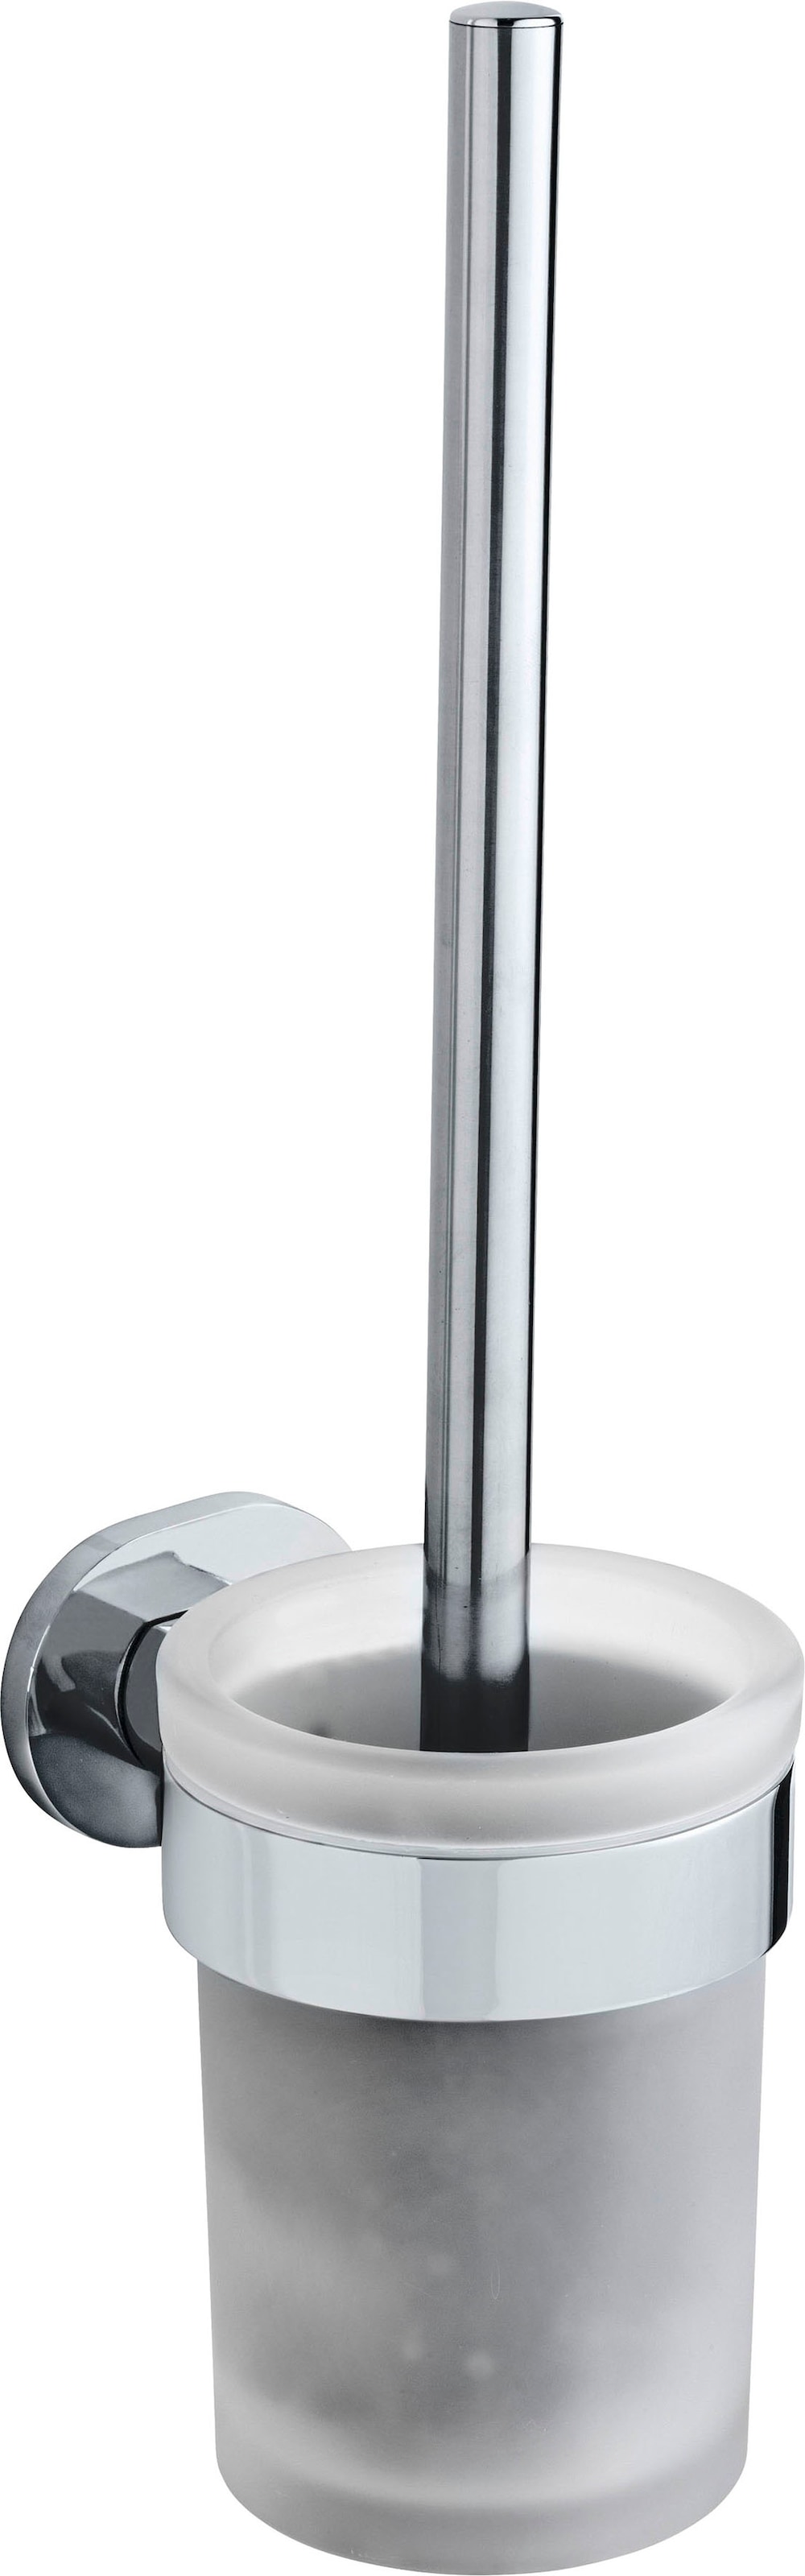 WENKO WC-Garnitur »UV-Loc® Maribor«, aus Zinkdruckguss-Glas, befestigen ohne Bohren, Bürstenkopf auswechselbar